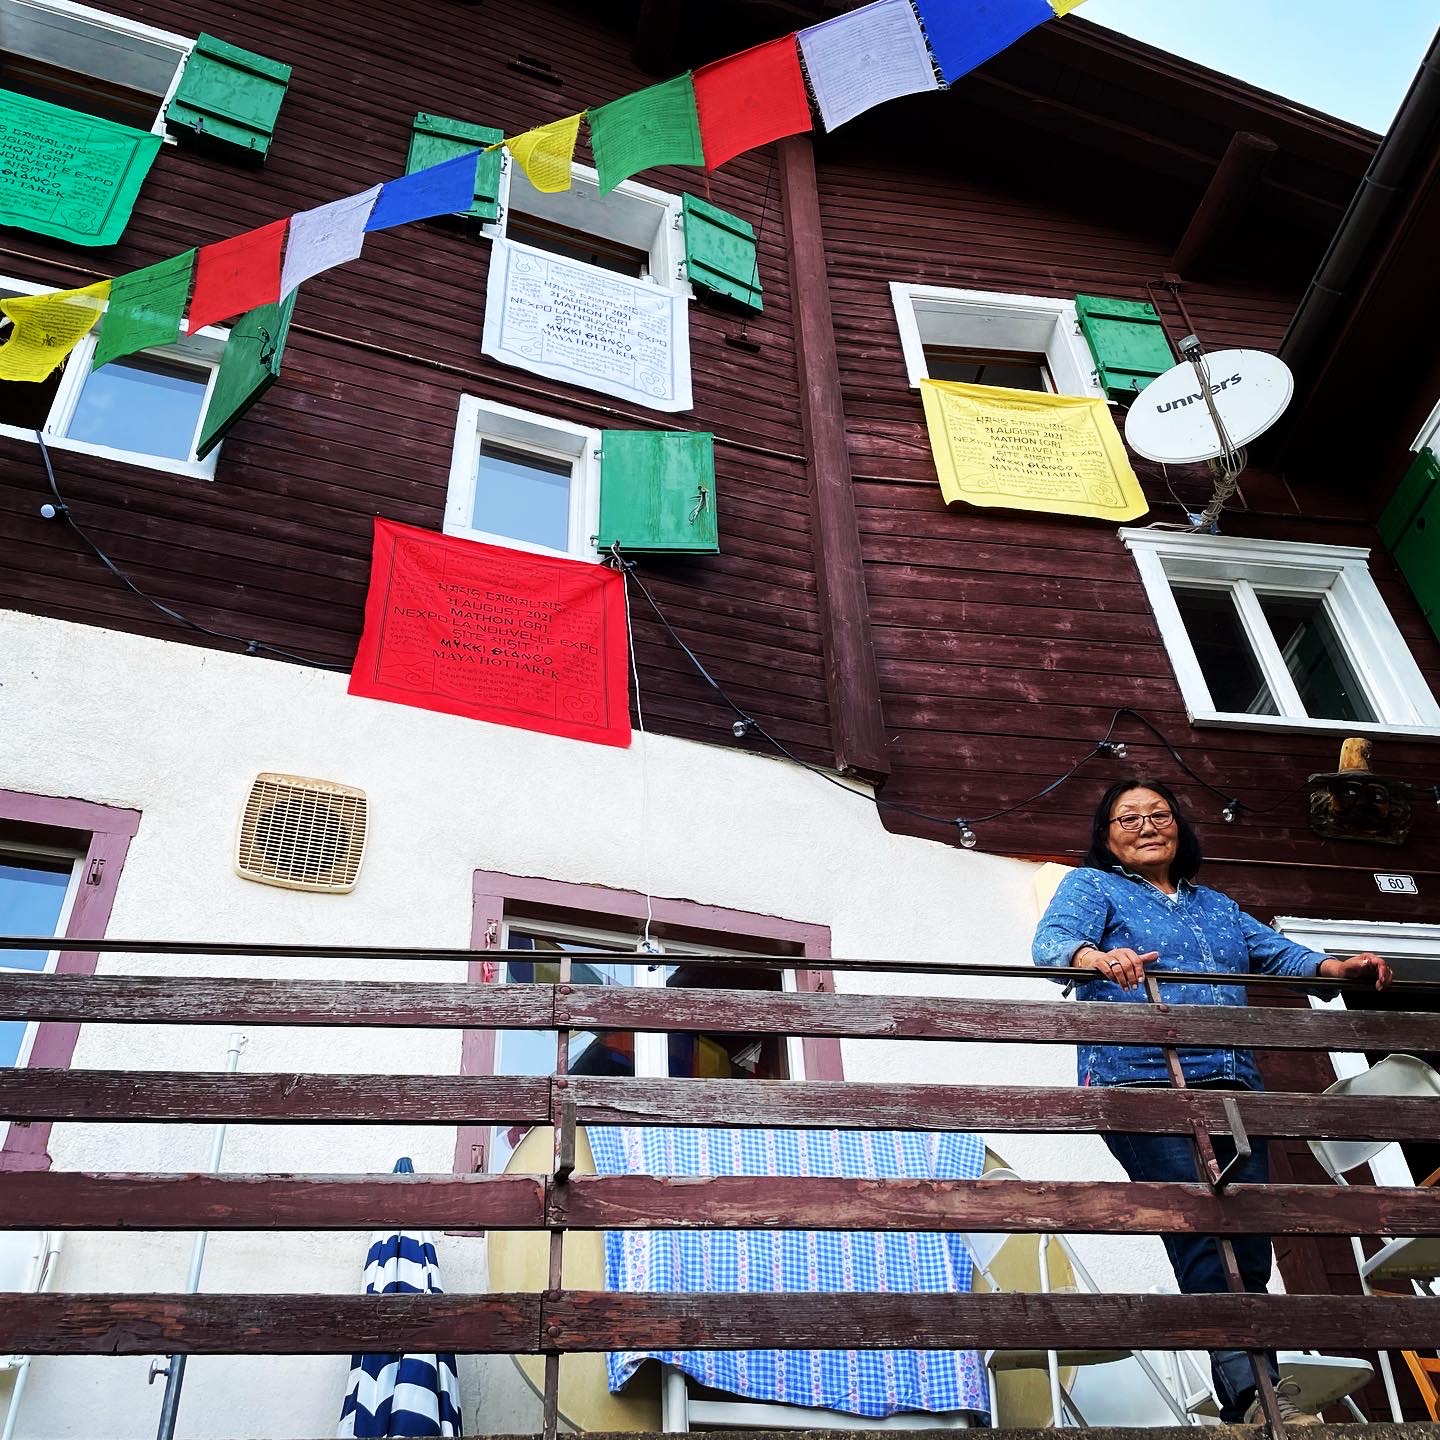 下一屆瑞士國家博覽會(Nexpo)的啟動會議在一間瑞士木屋裡舉行，這個木屋採用藏族裝修風格，專門接待國際藝術家入駐：這個項目計劃立足當地、放眼全球。